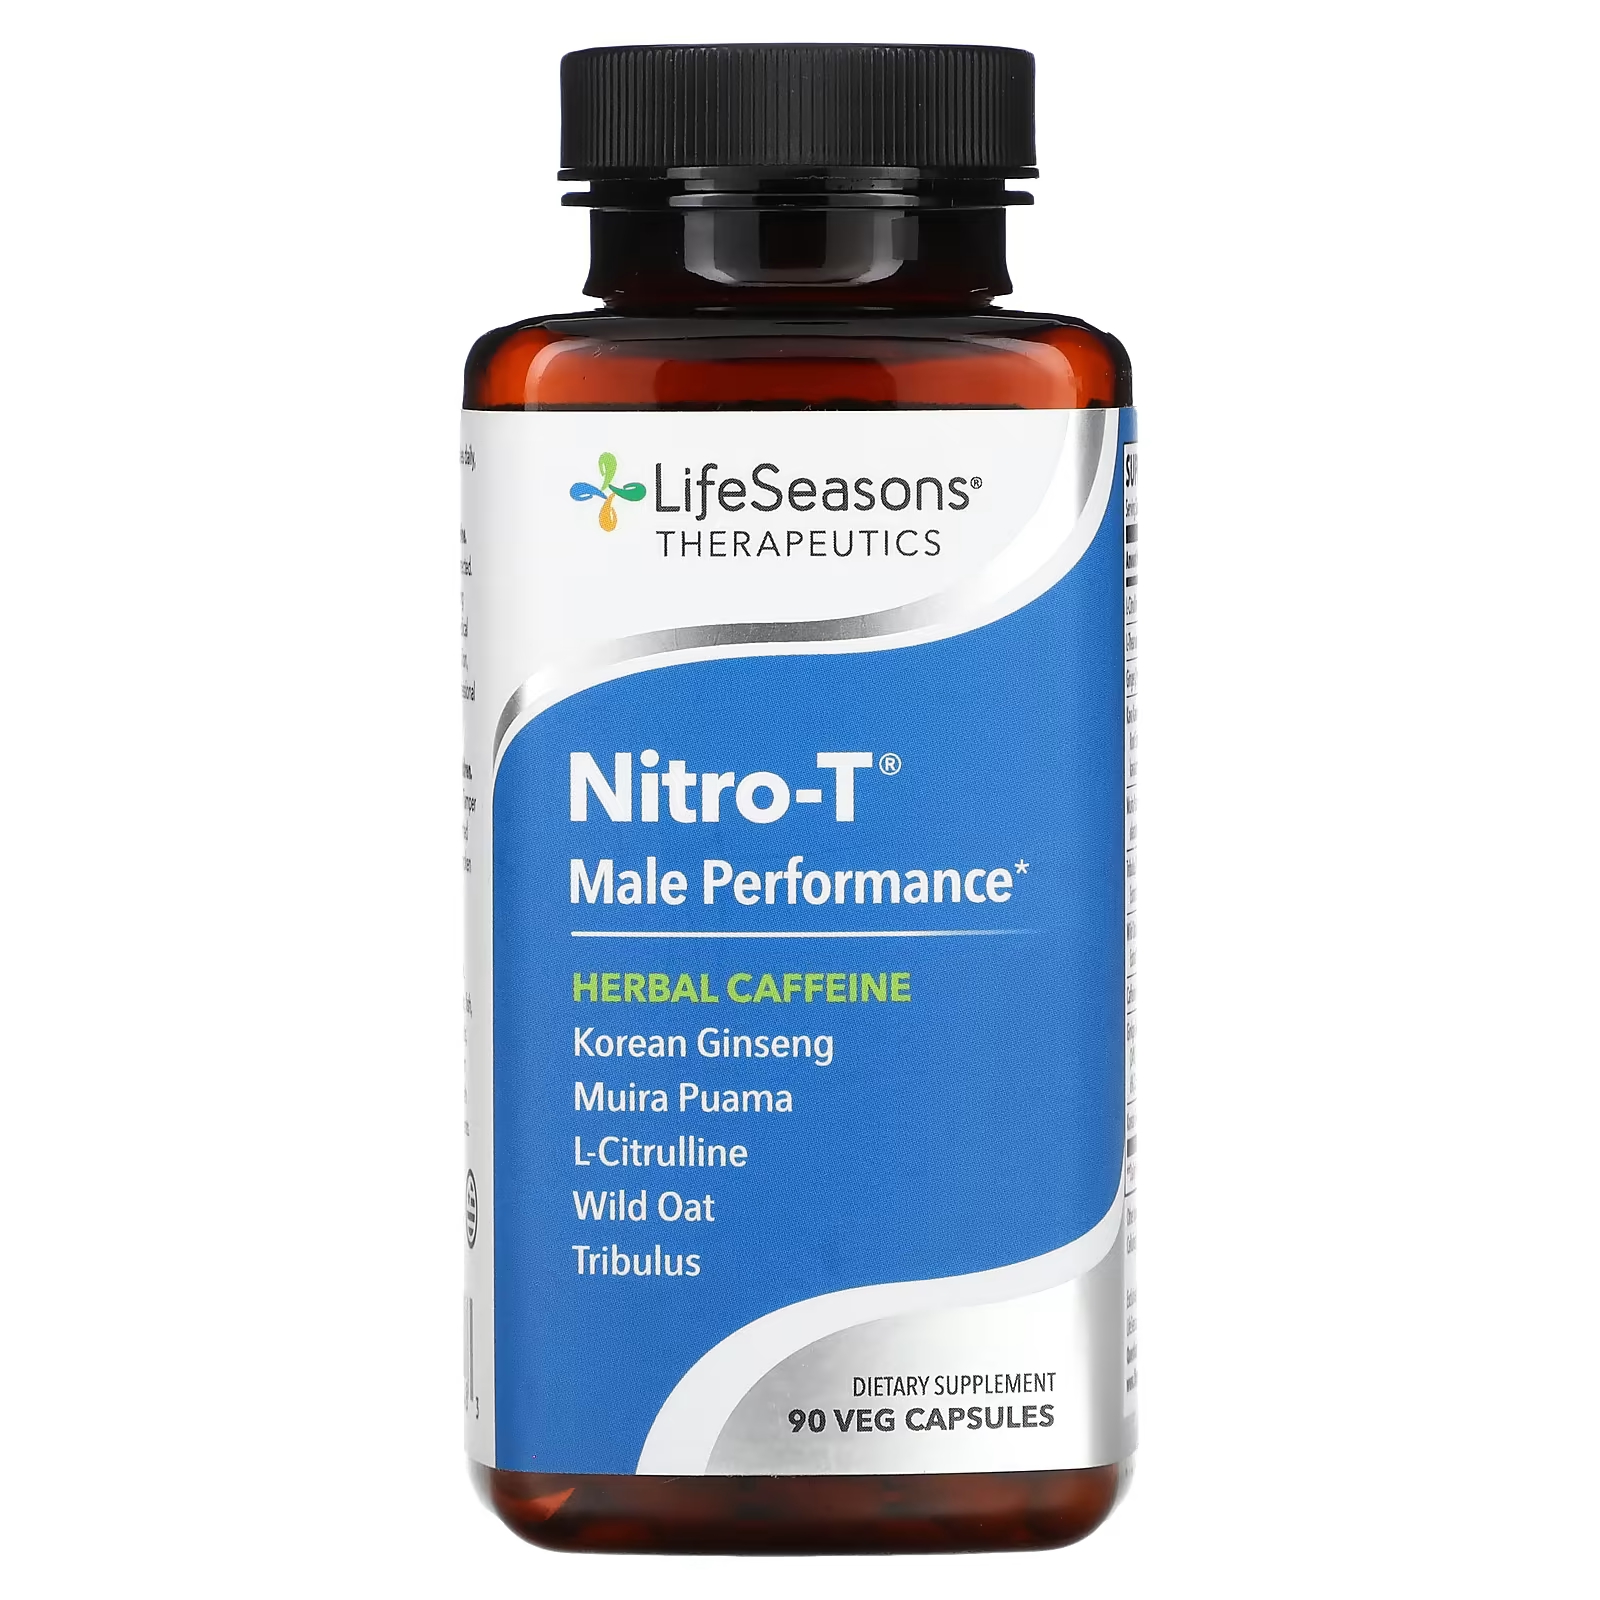 Пищевая добавка LifeSeasons Nitro-T для мужчин, 90 капсул пищевая добавка lifeseasons nitro t для мужчин 90 капсул